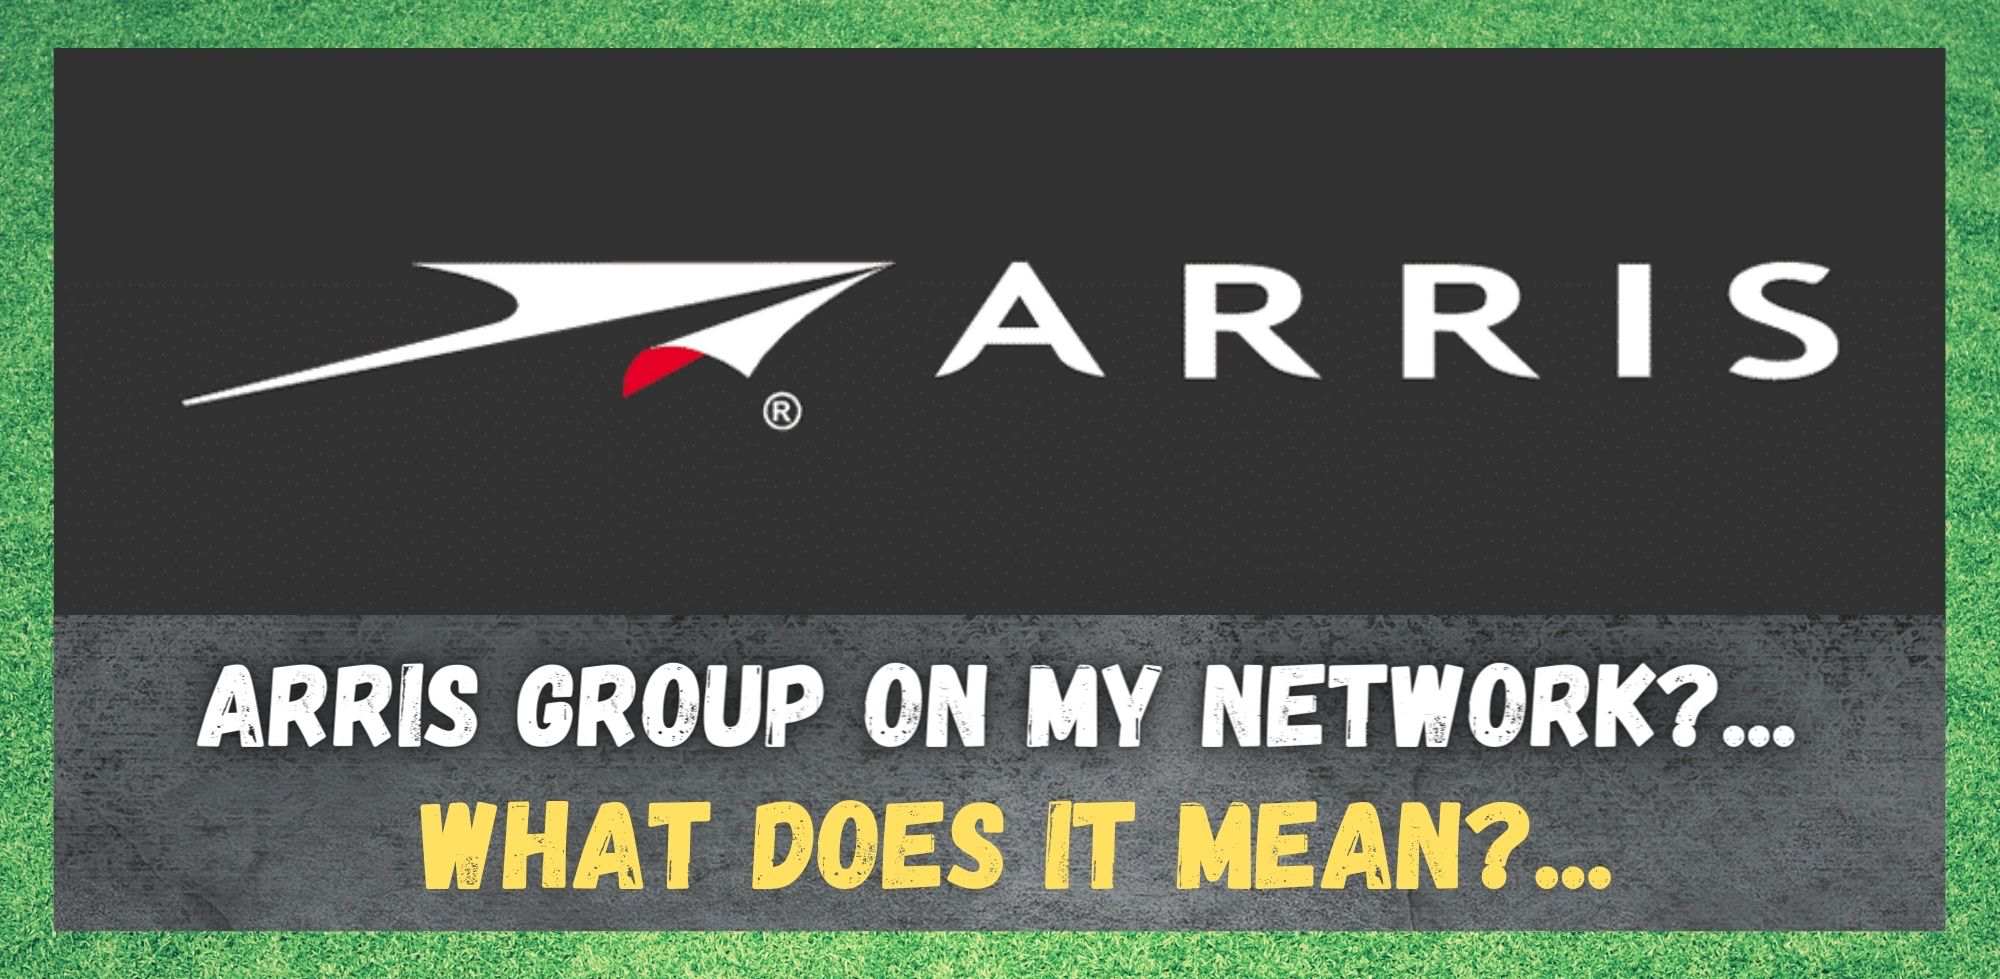 Gruppo Arris sulla mia rete: cosa significa?